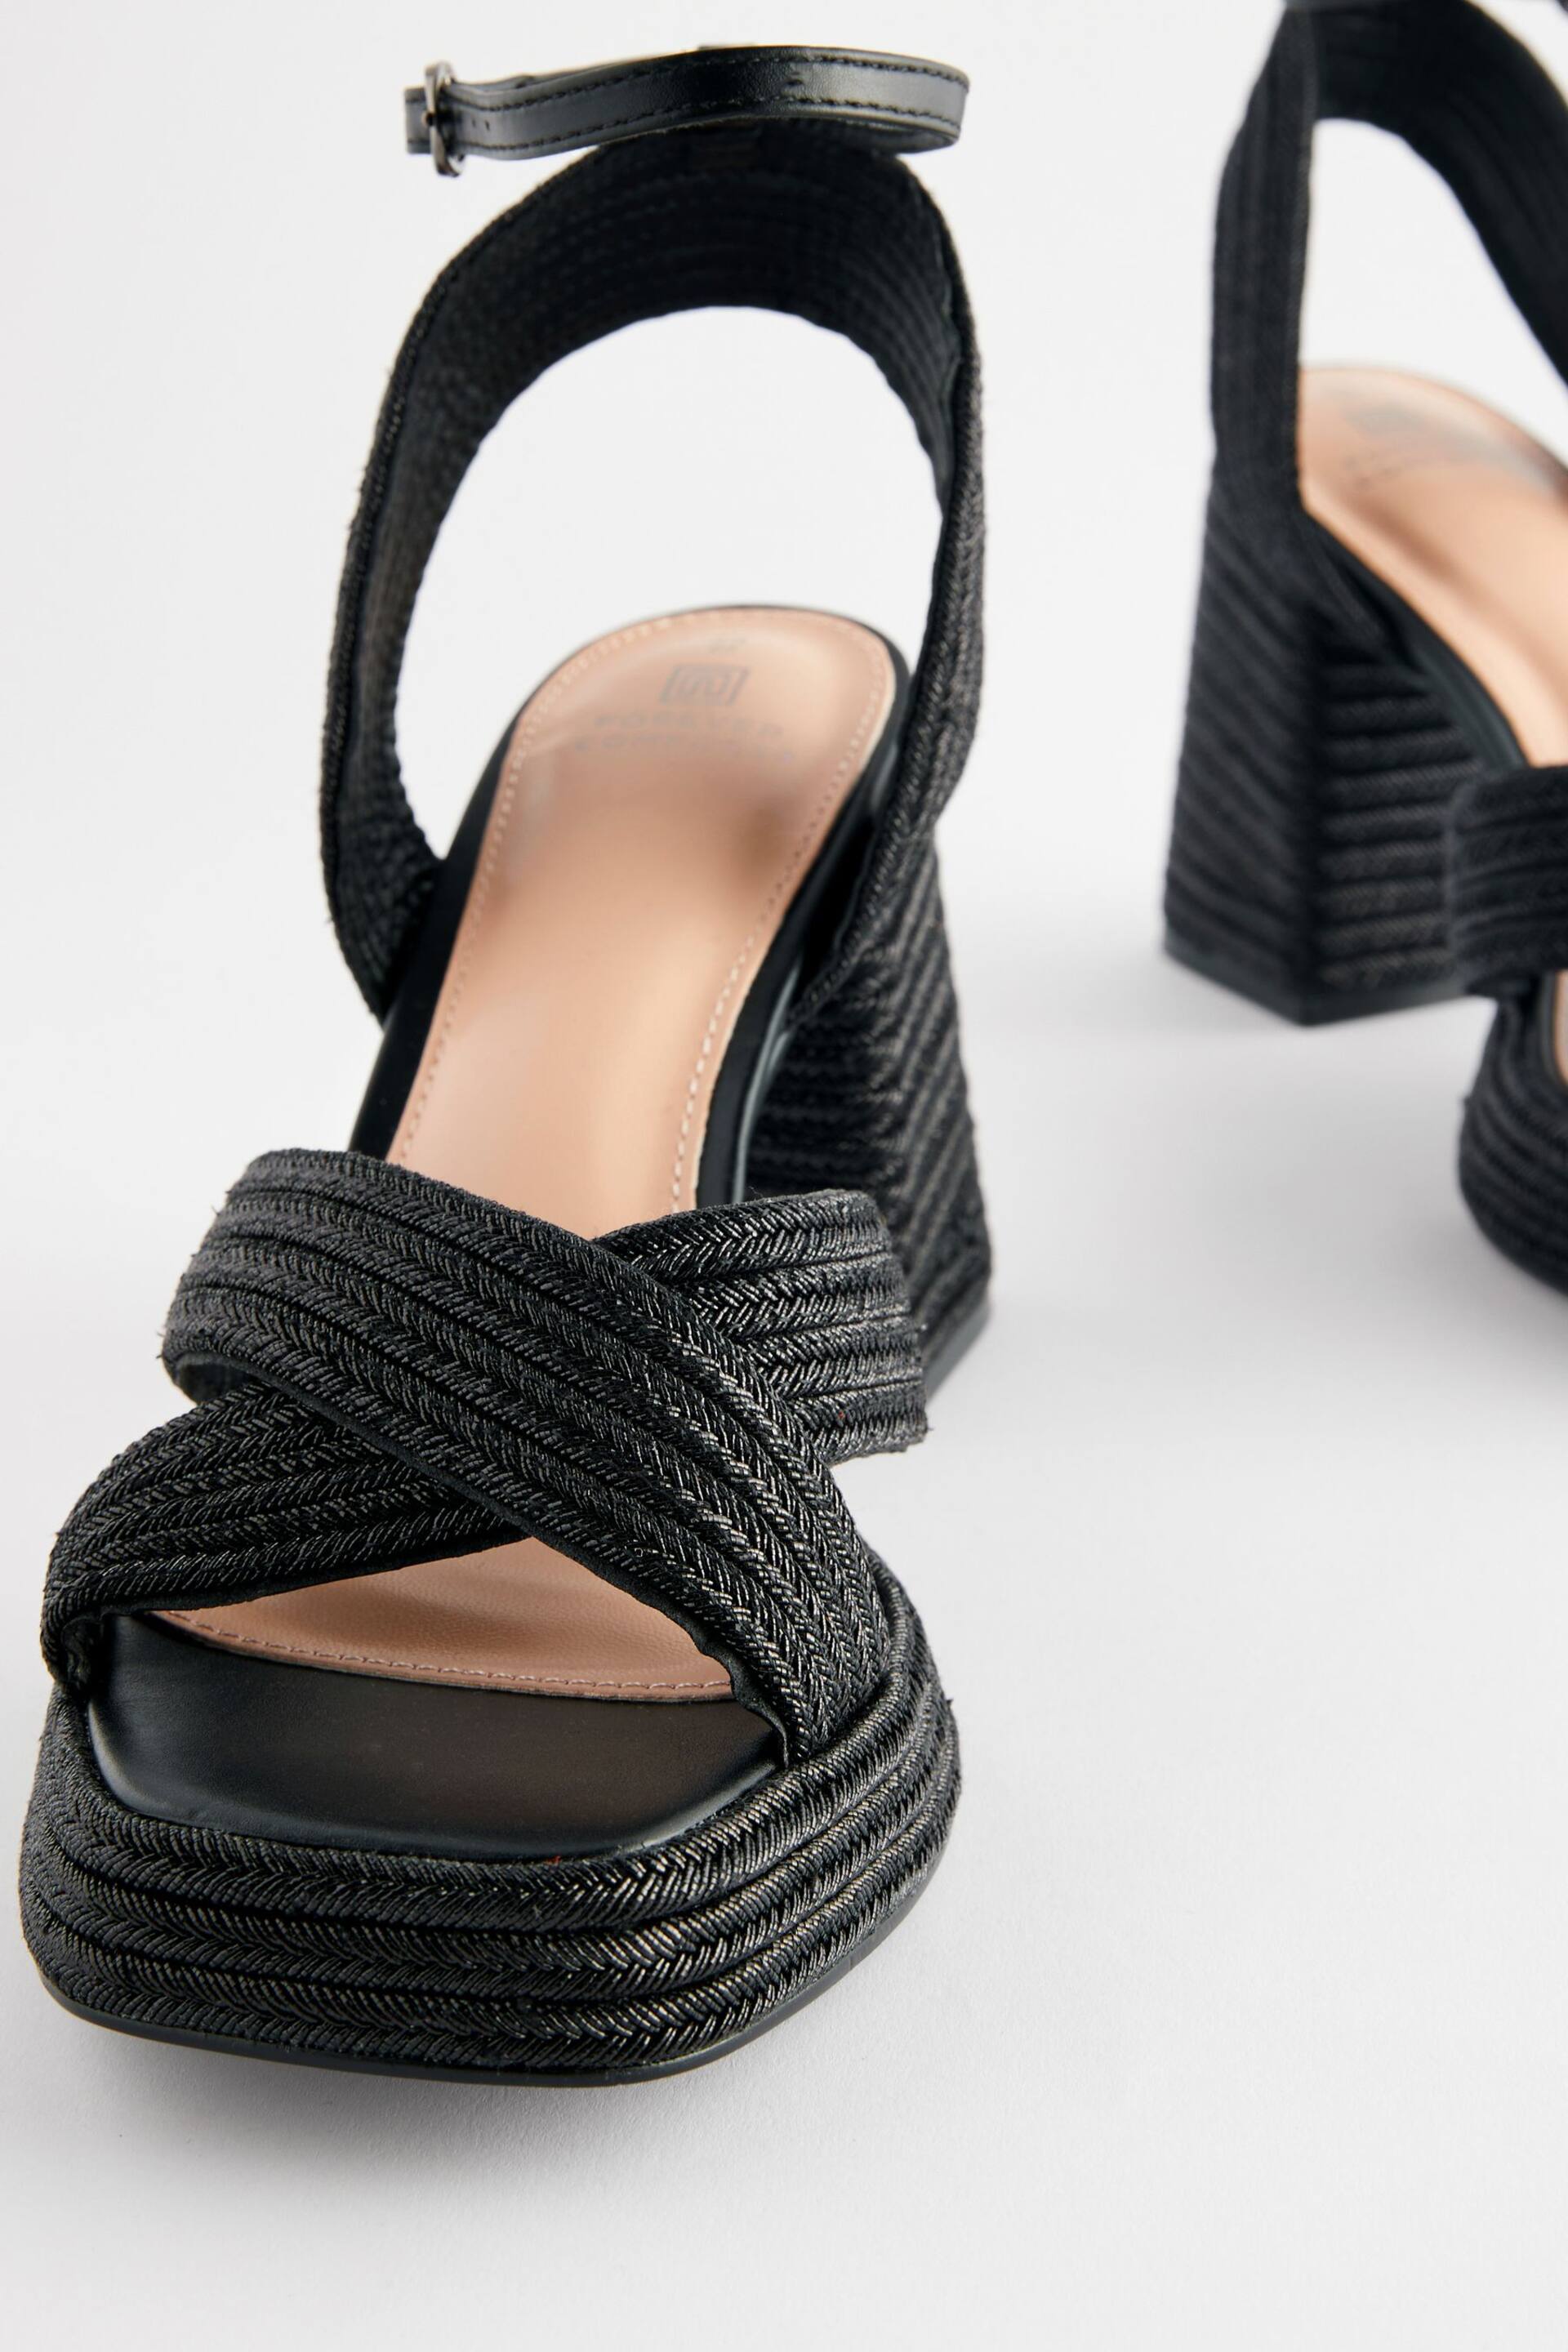 Black Jute Forever Comfort® Flare Platform Sandals - Image 3 of 5